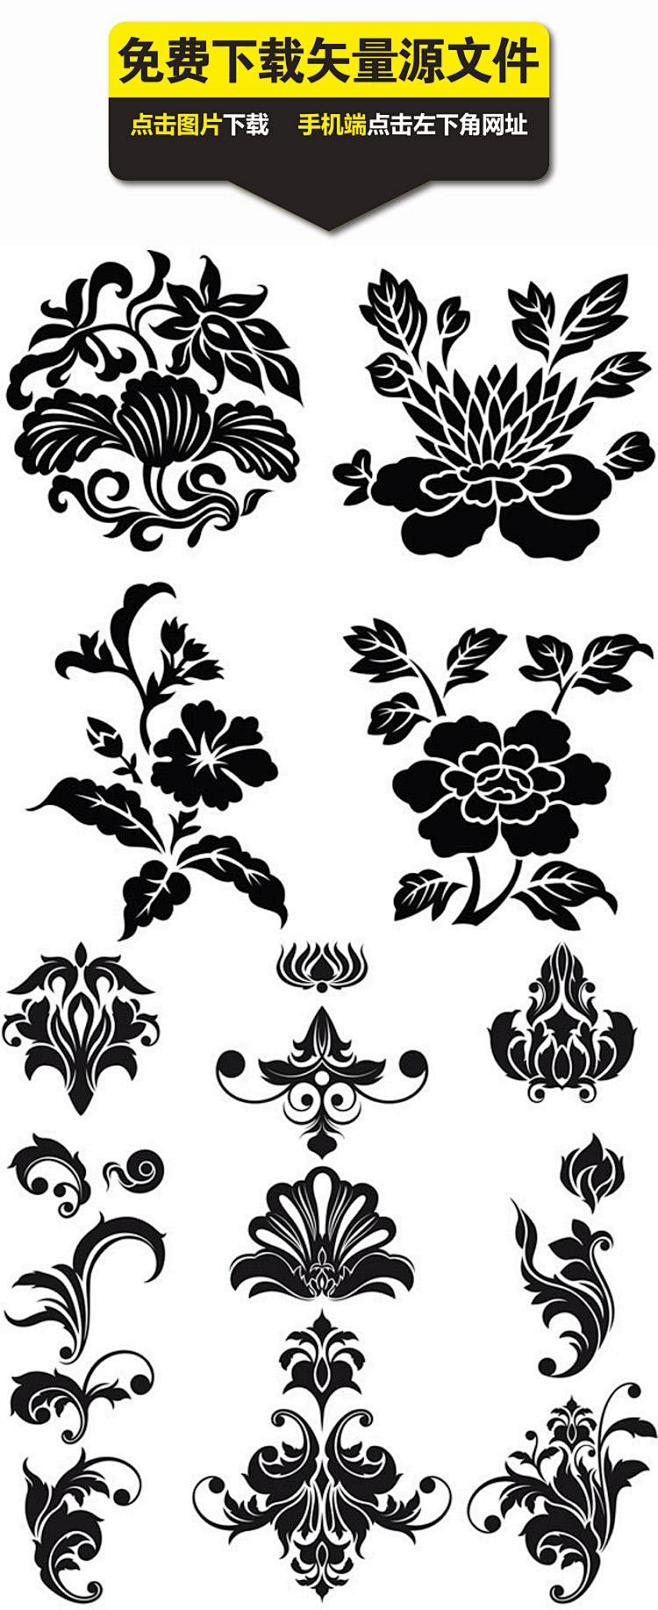 com 黑色花卉植物花纹矢量图,黑色花纹,花卉样式,植物纹样,典雅花 袖